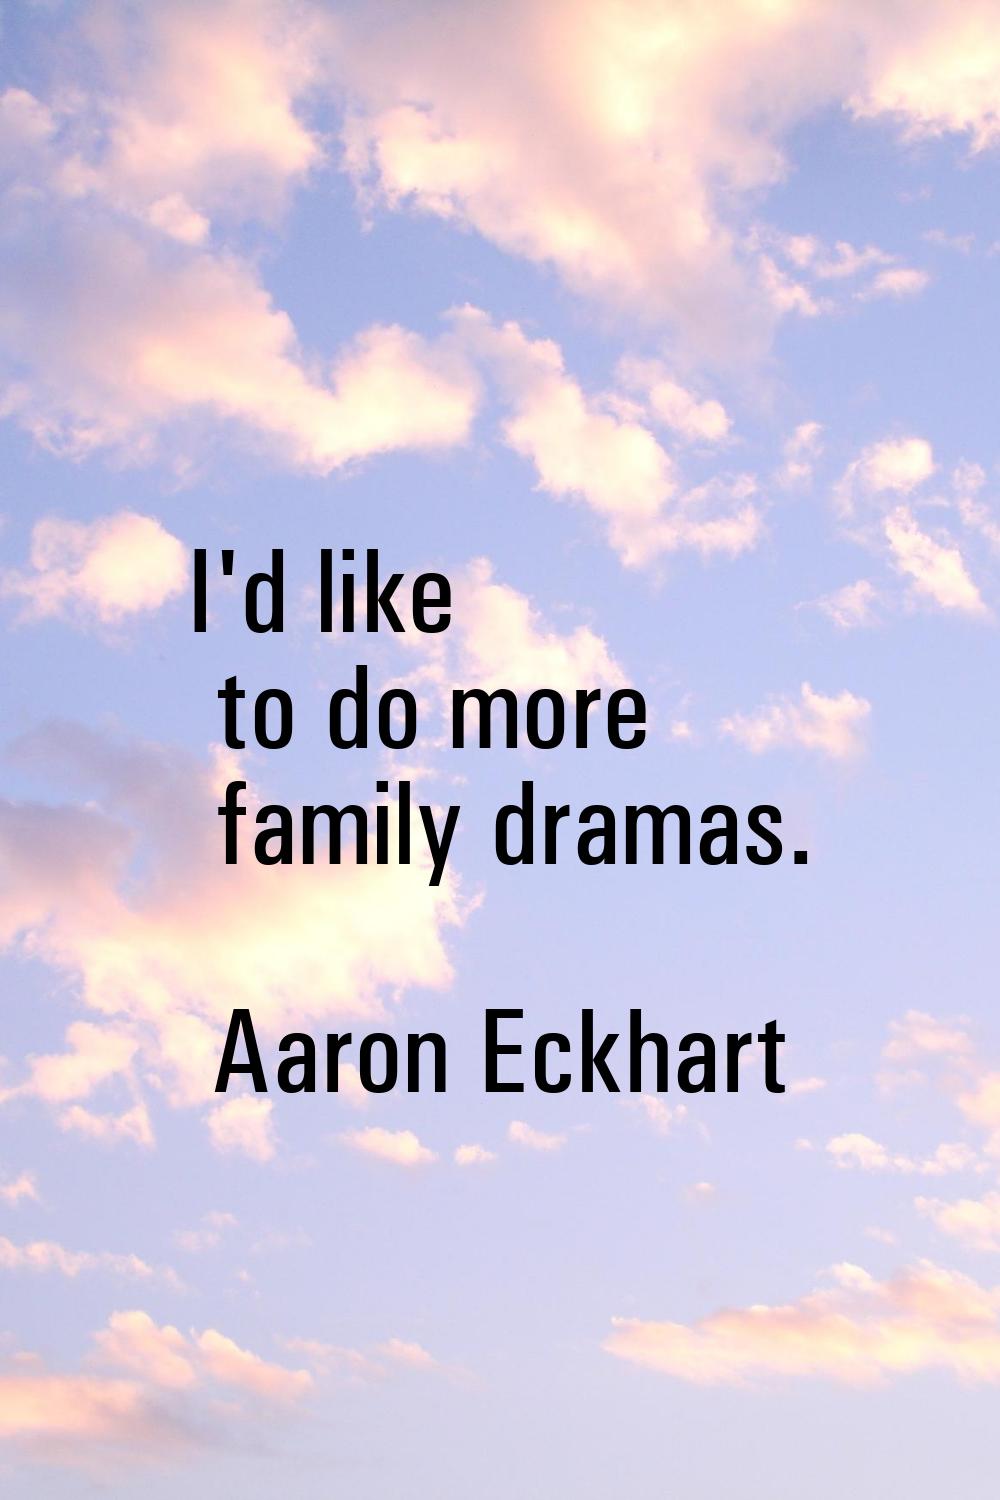 I'd like to do more family dramas.